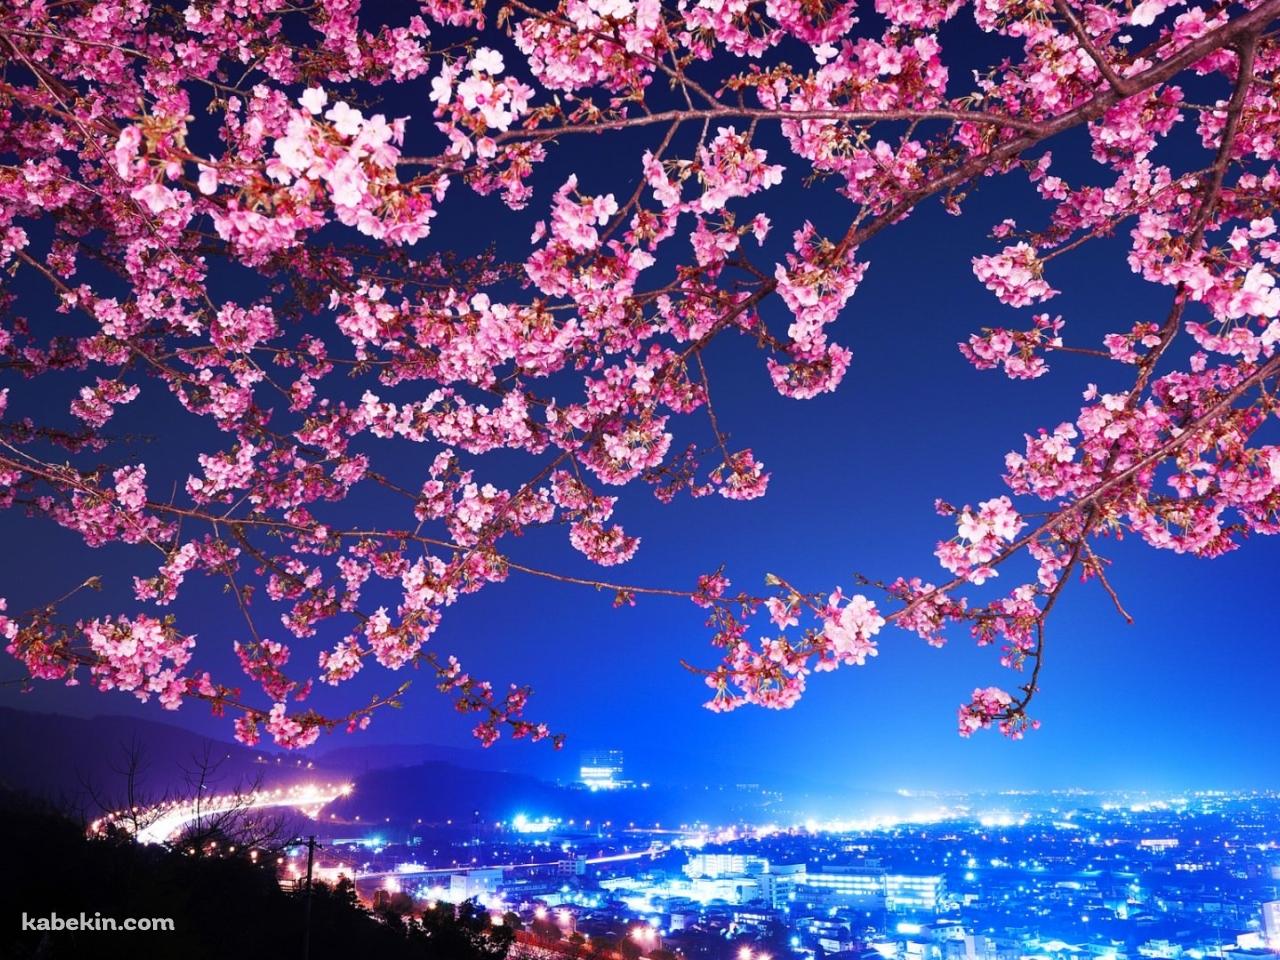 夜景と桜の壁紙(1280px x 960px) 高画質 PC・デスクトップ用